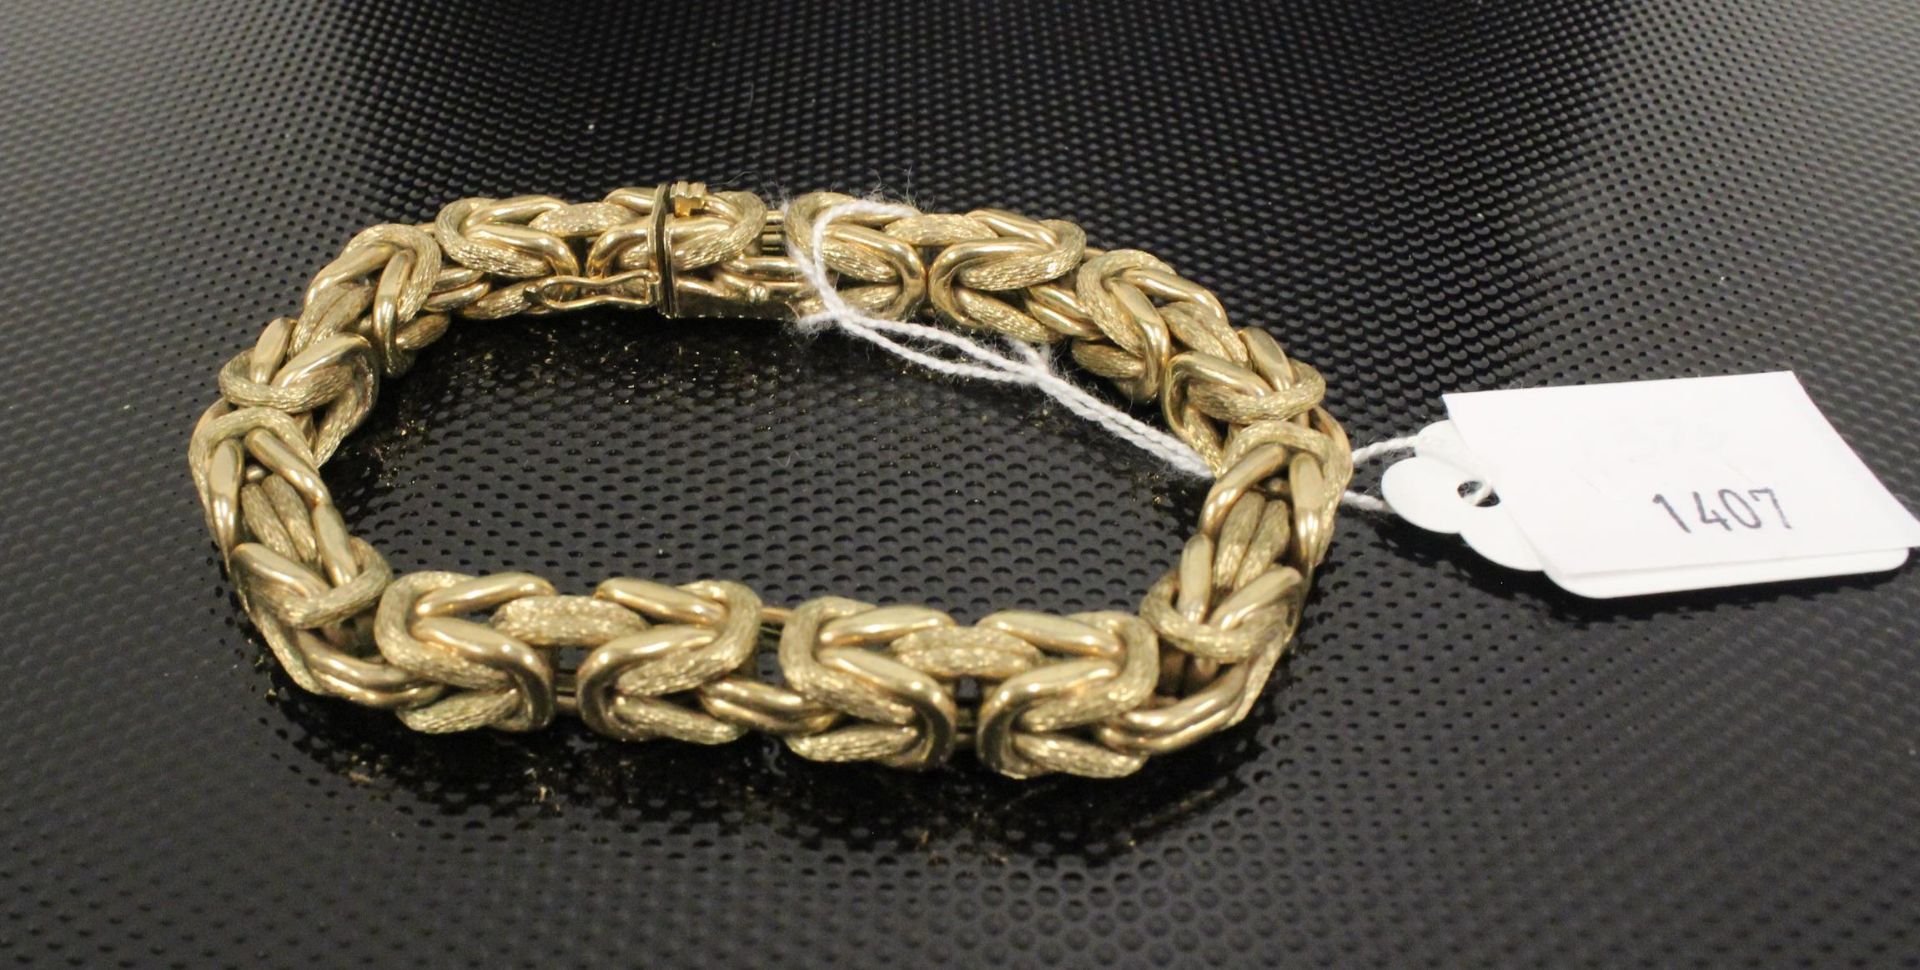 A 9ct Gold large fancy link Bracelet. 35gms, cased. (Est. £300-£500)